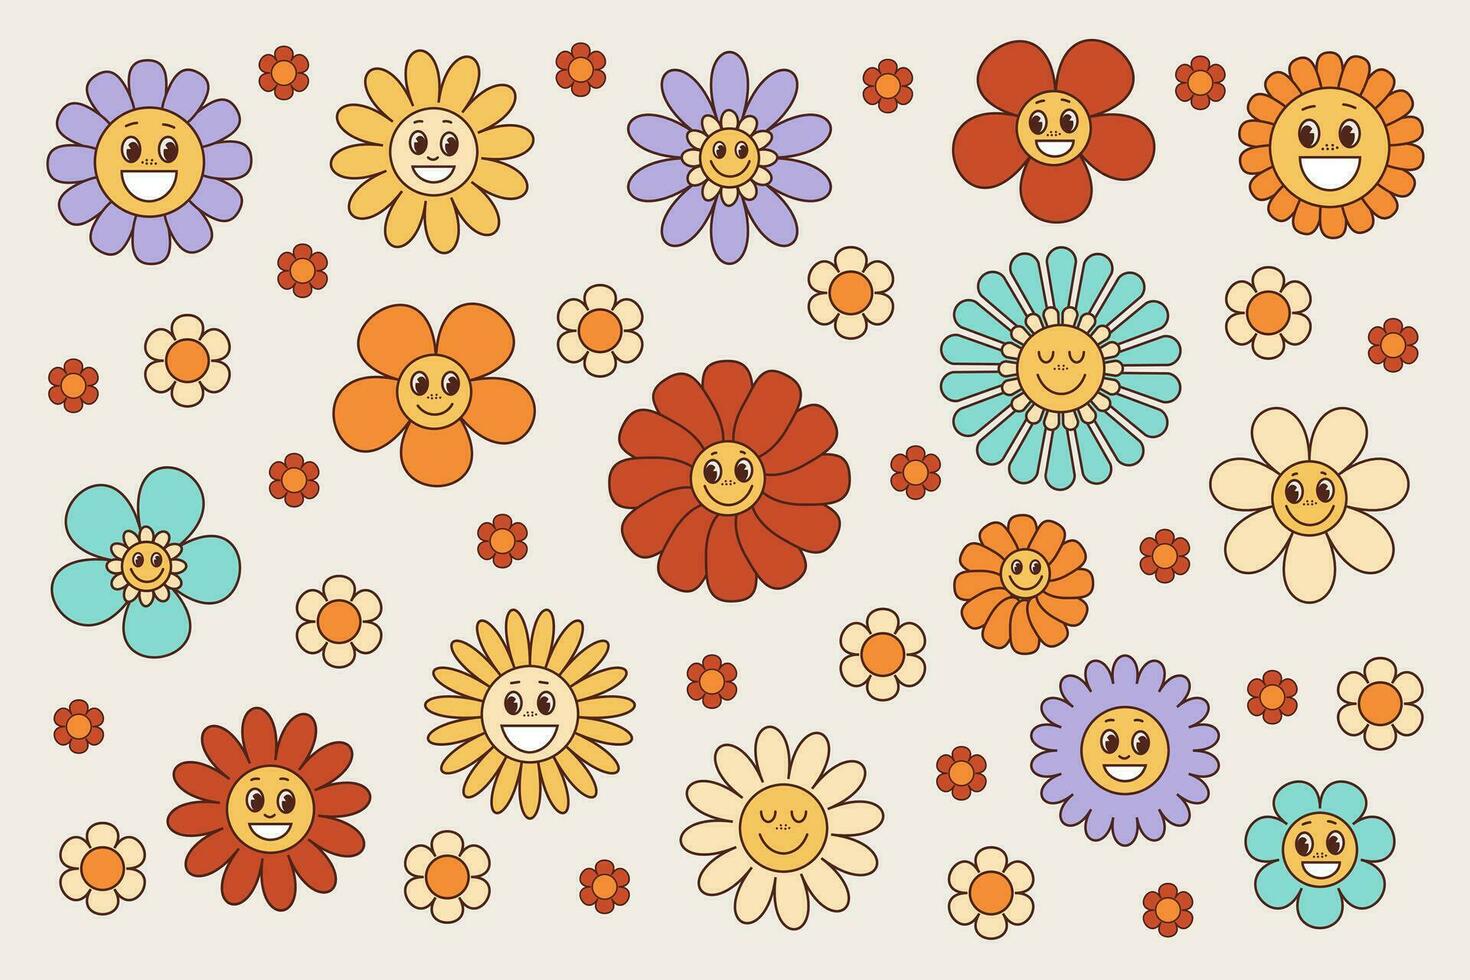 rhéteur rainure fleurs sourire ensemble 1970 style, ancien collection de fleurs avec visages mignonne les enfants autocollants, vecteur Icônes 60